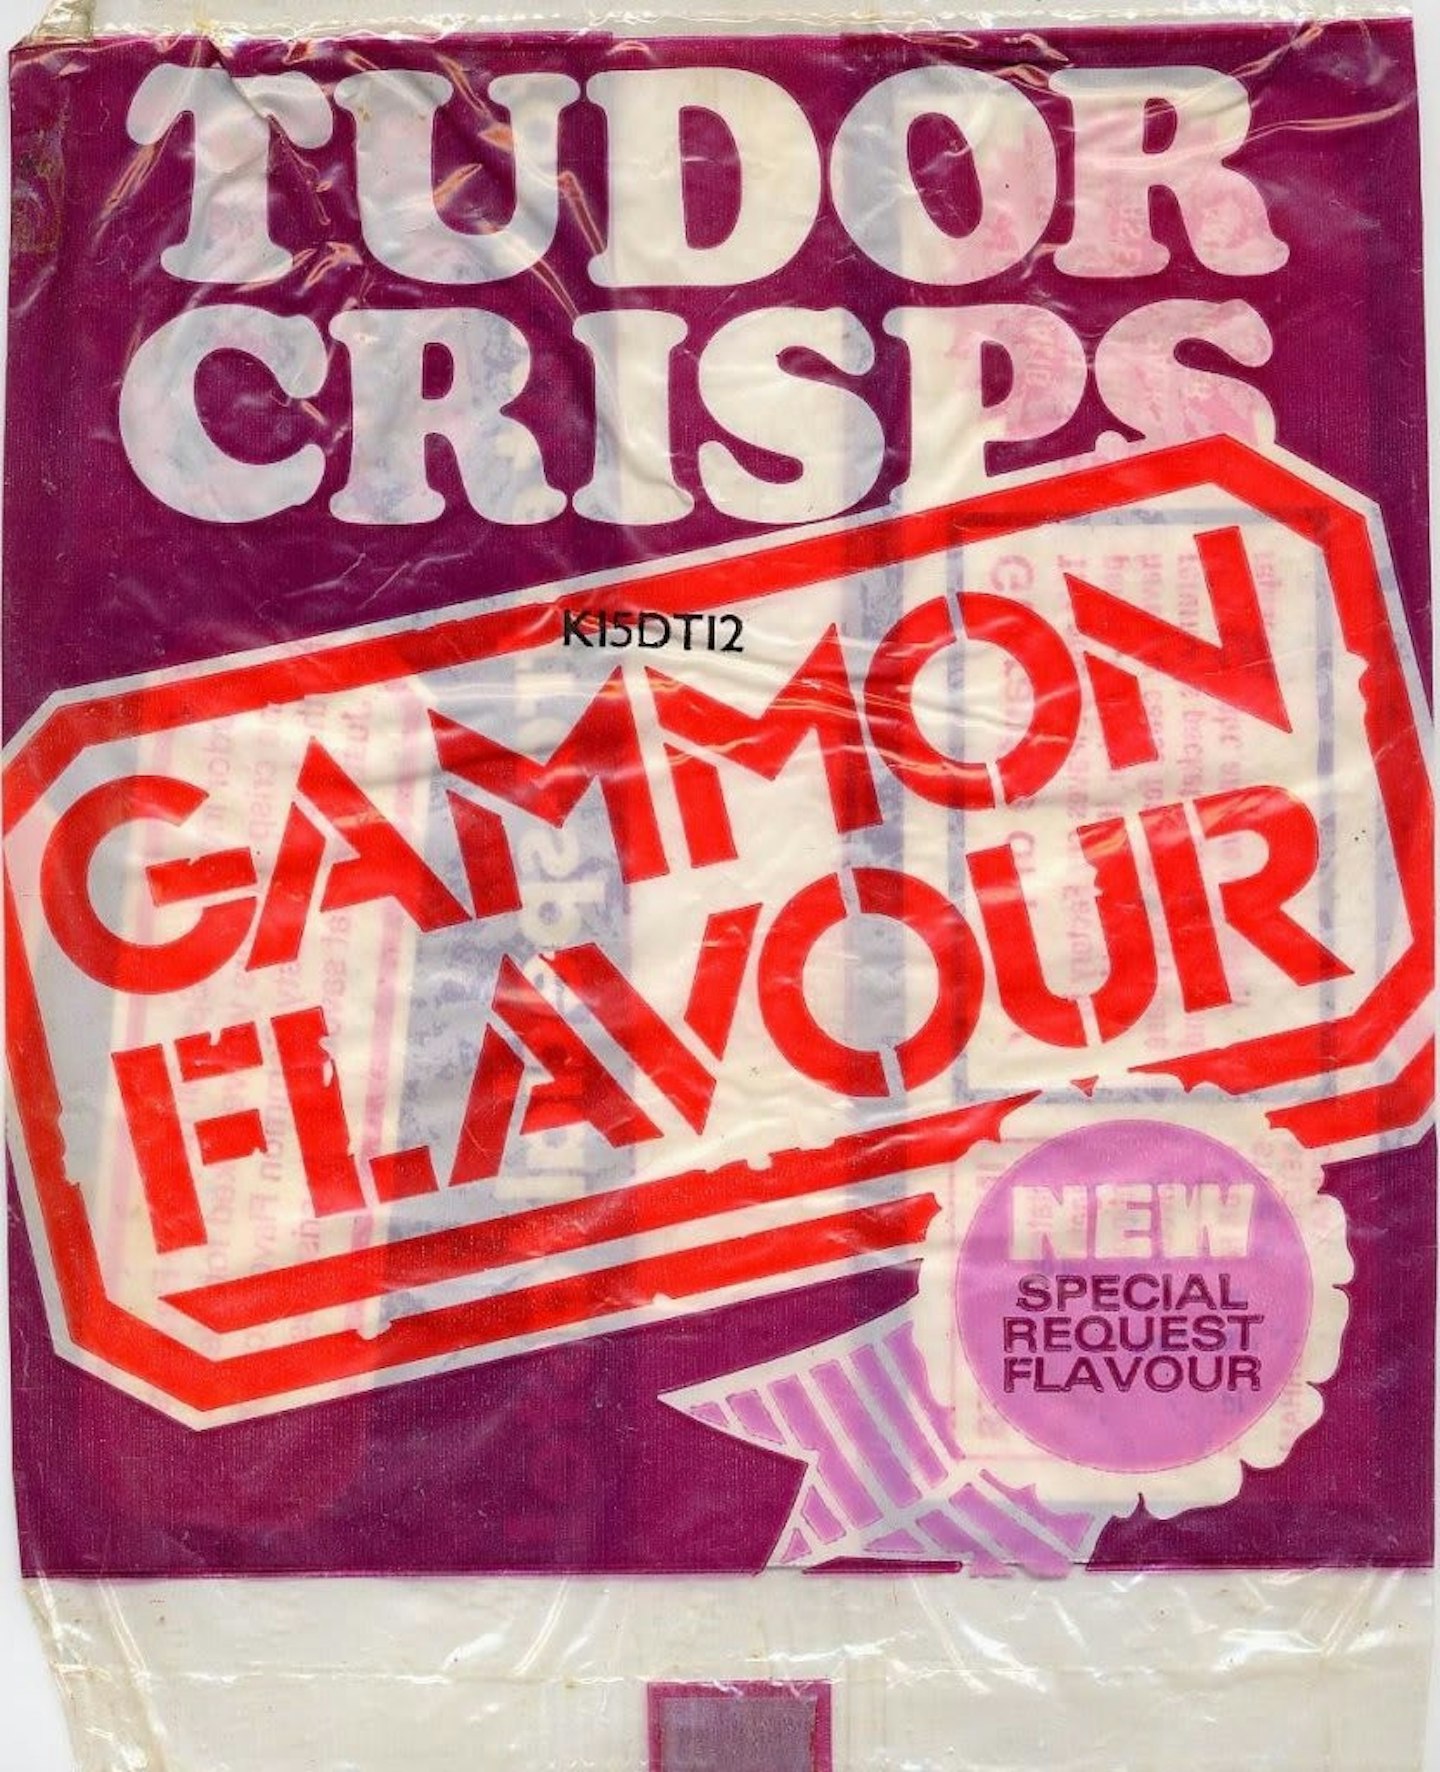 Discontinued Crisps Tudor Crisps